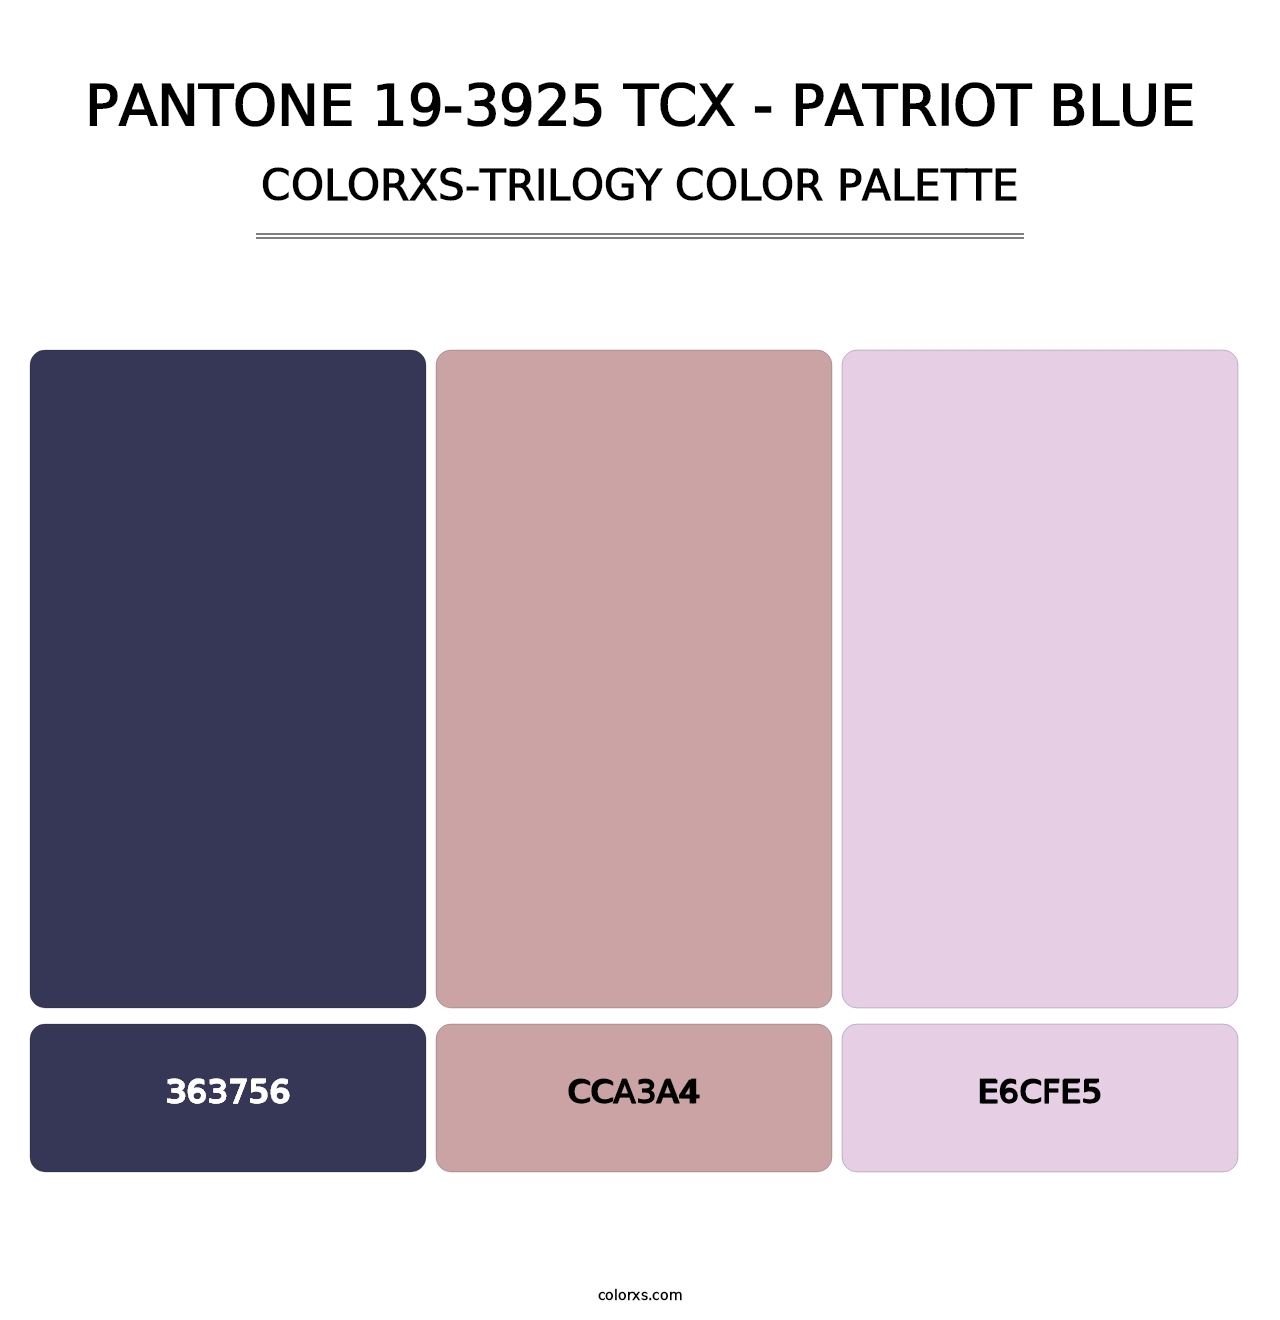 PANTONE 19-3925 TCX - Patriot Blue - Colorxs Trilogy Palette